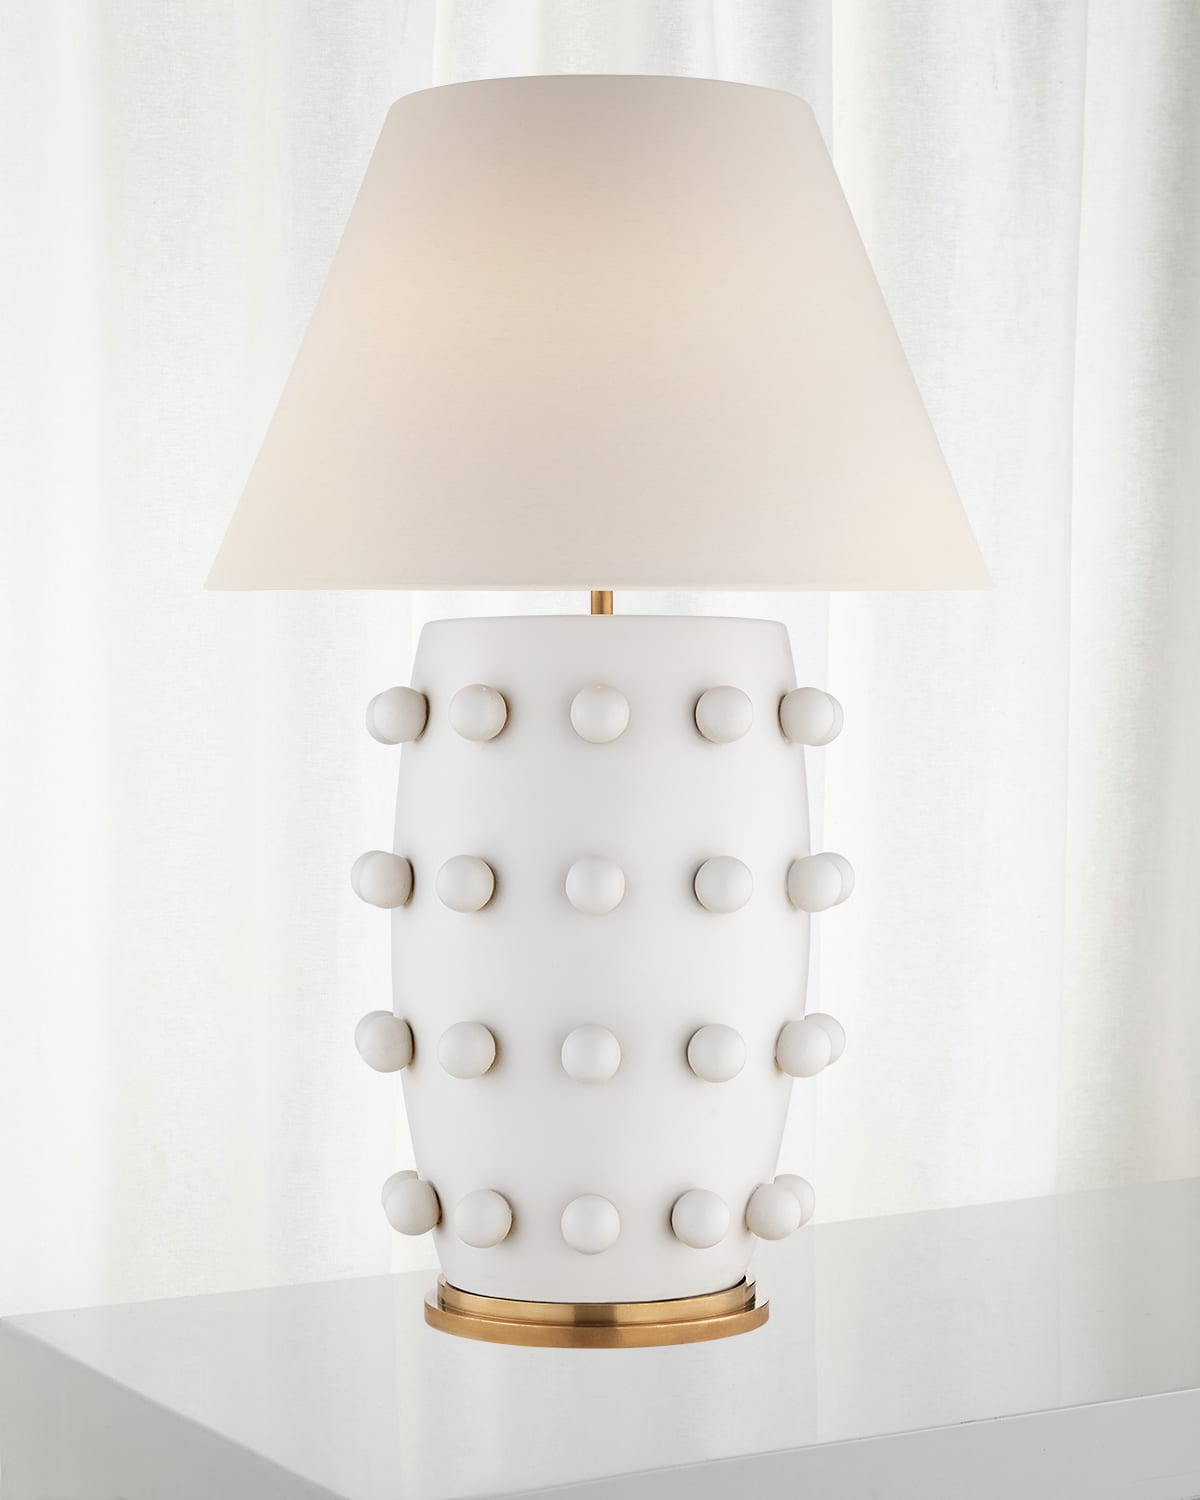 KELLY WEARSTLER LINDEN TABLE LAMP BY KELLY WEARSTLER,PROD216880211